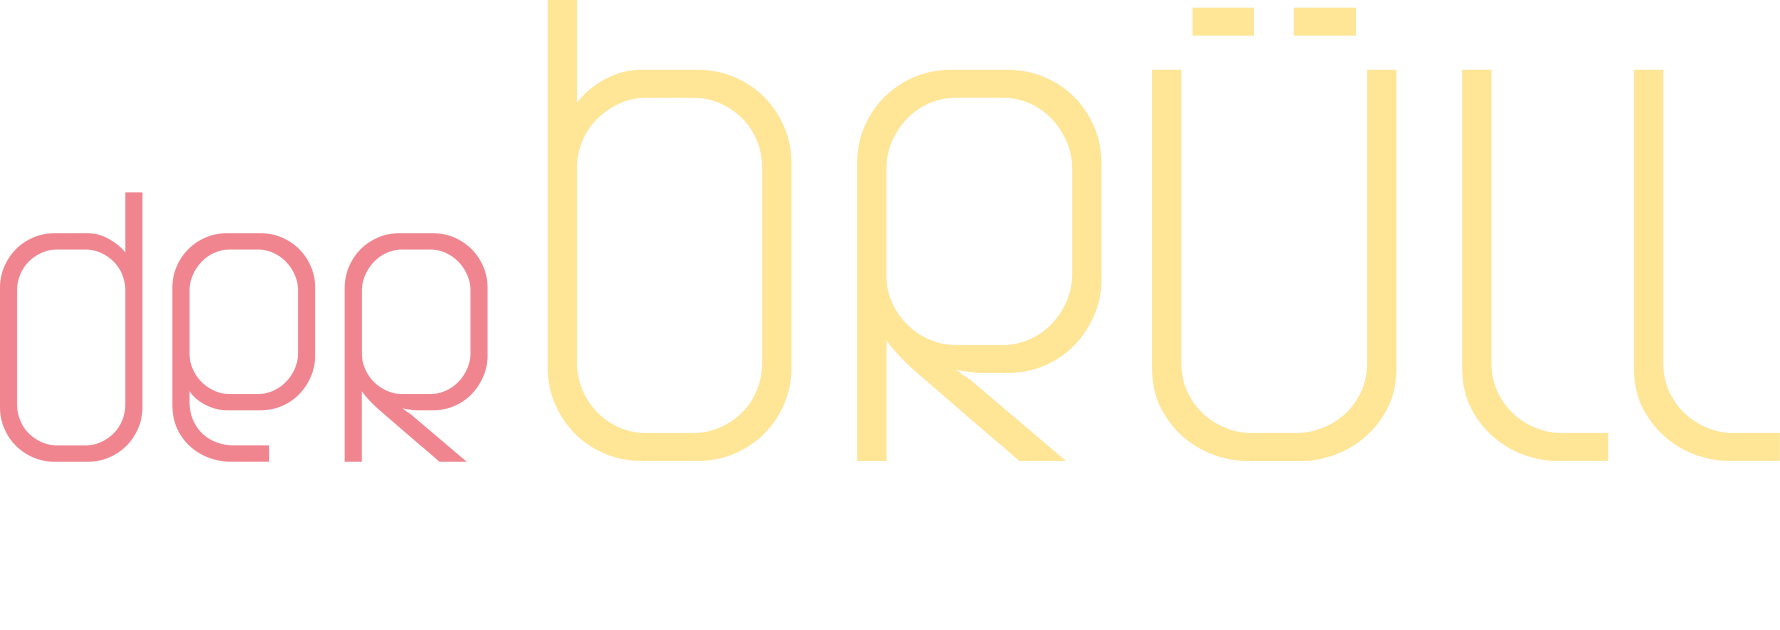 Logo-der-Bruell-KONTAKT.png